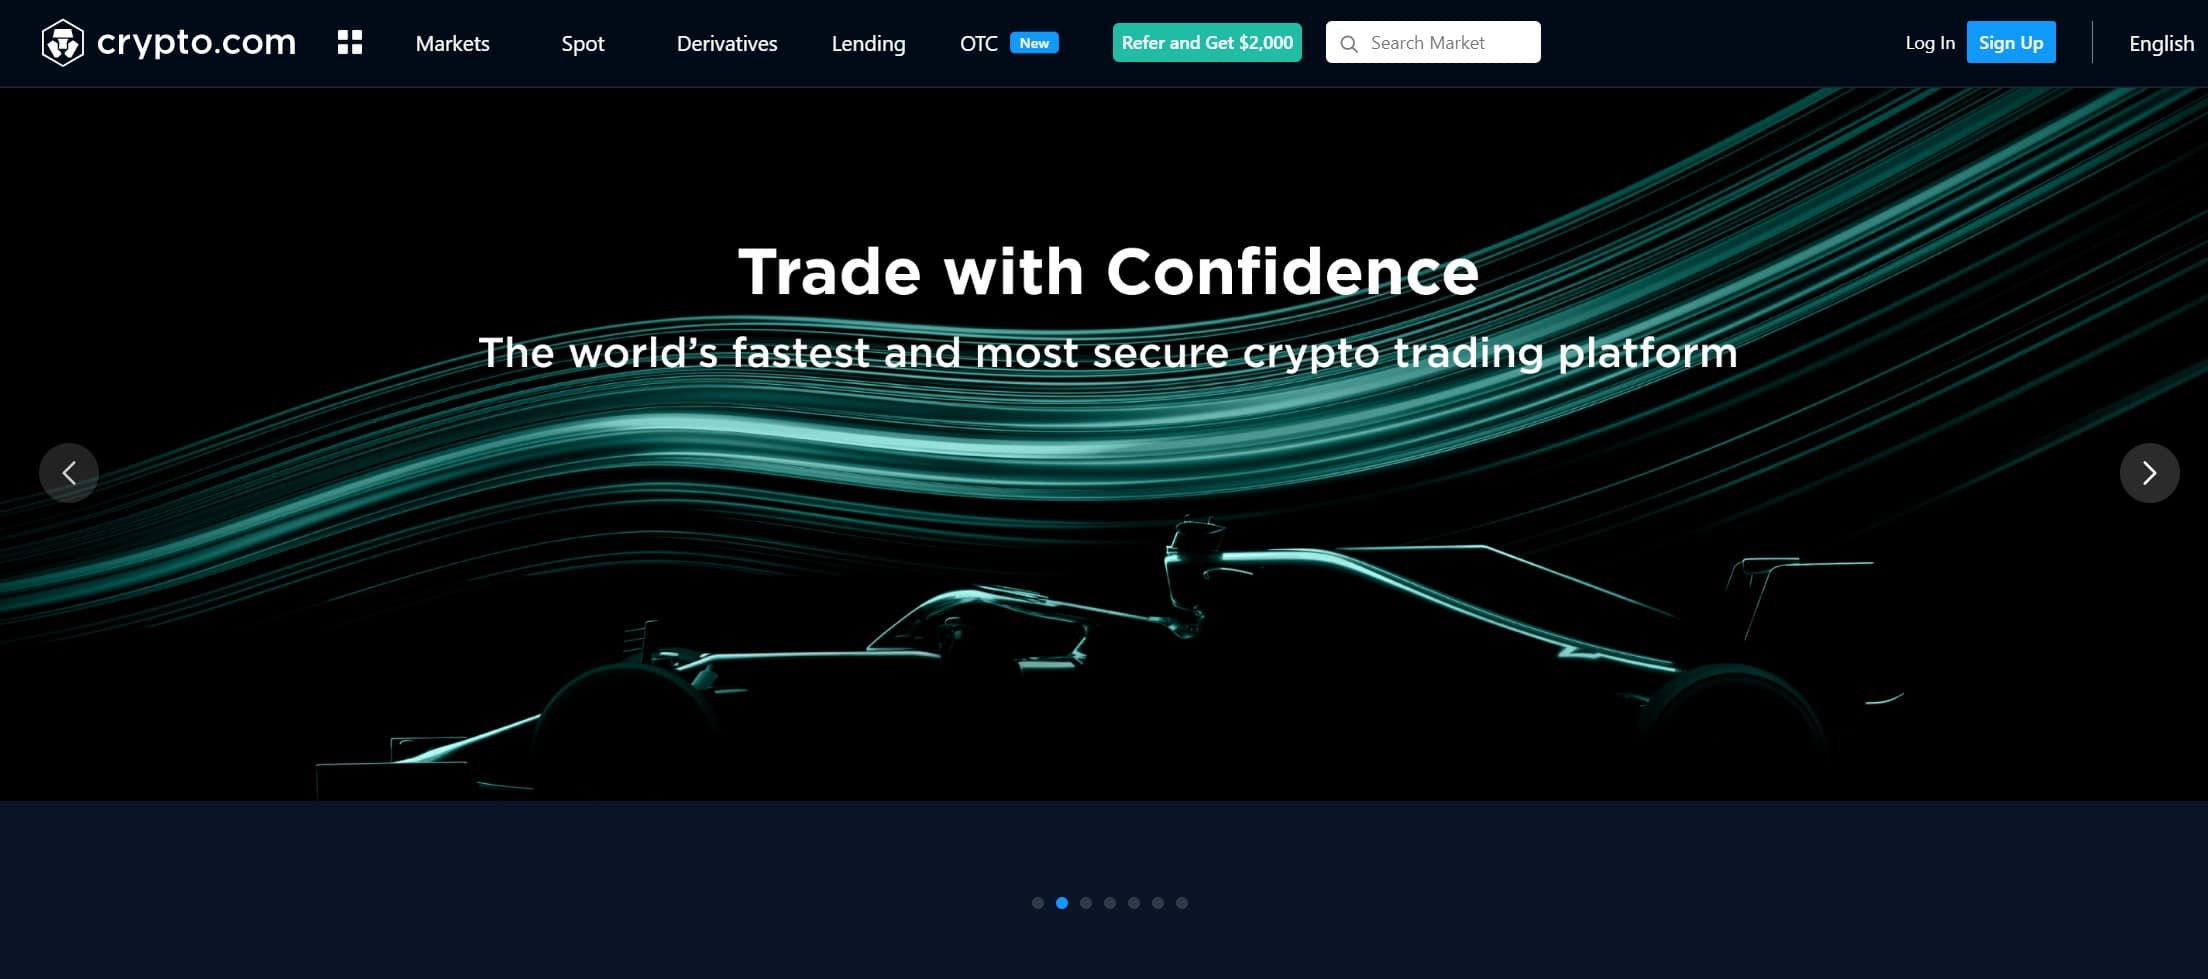 αρχική σελίδα ανταλλαγής crypto.com